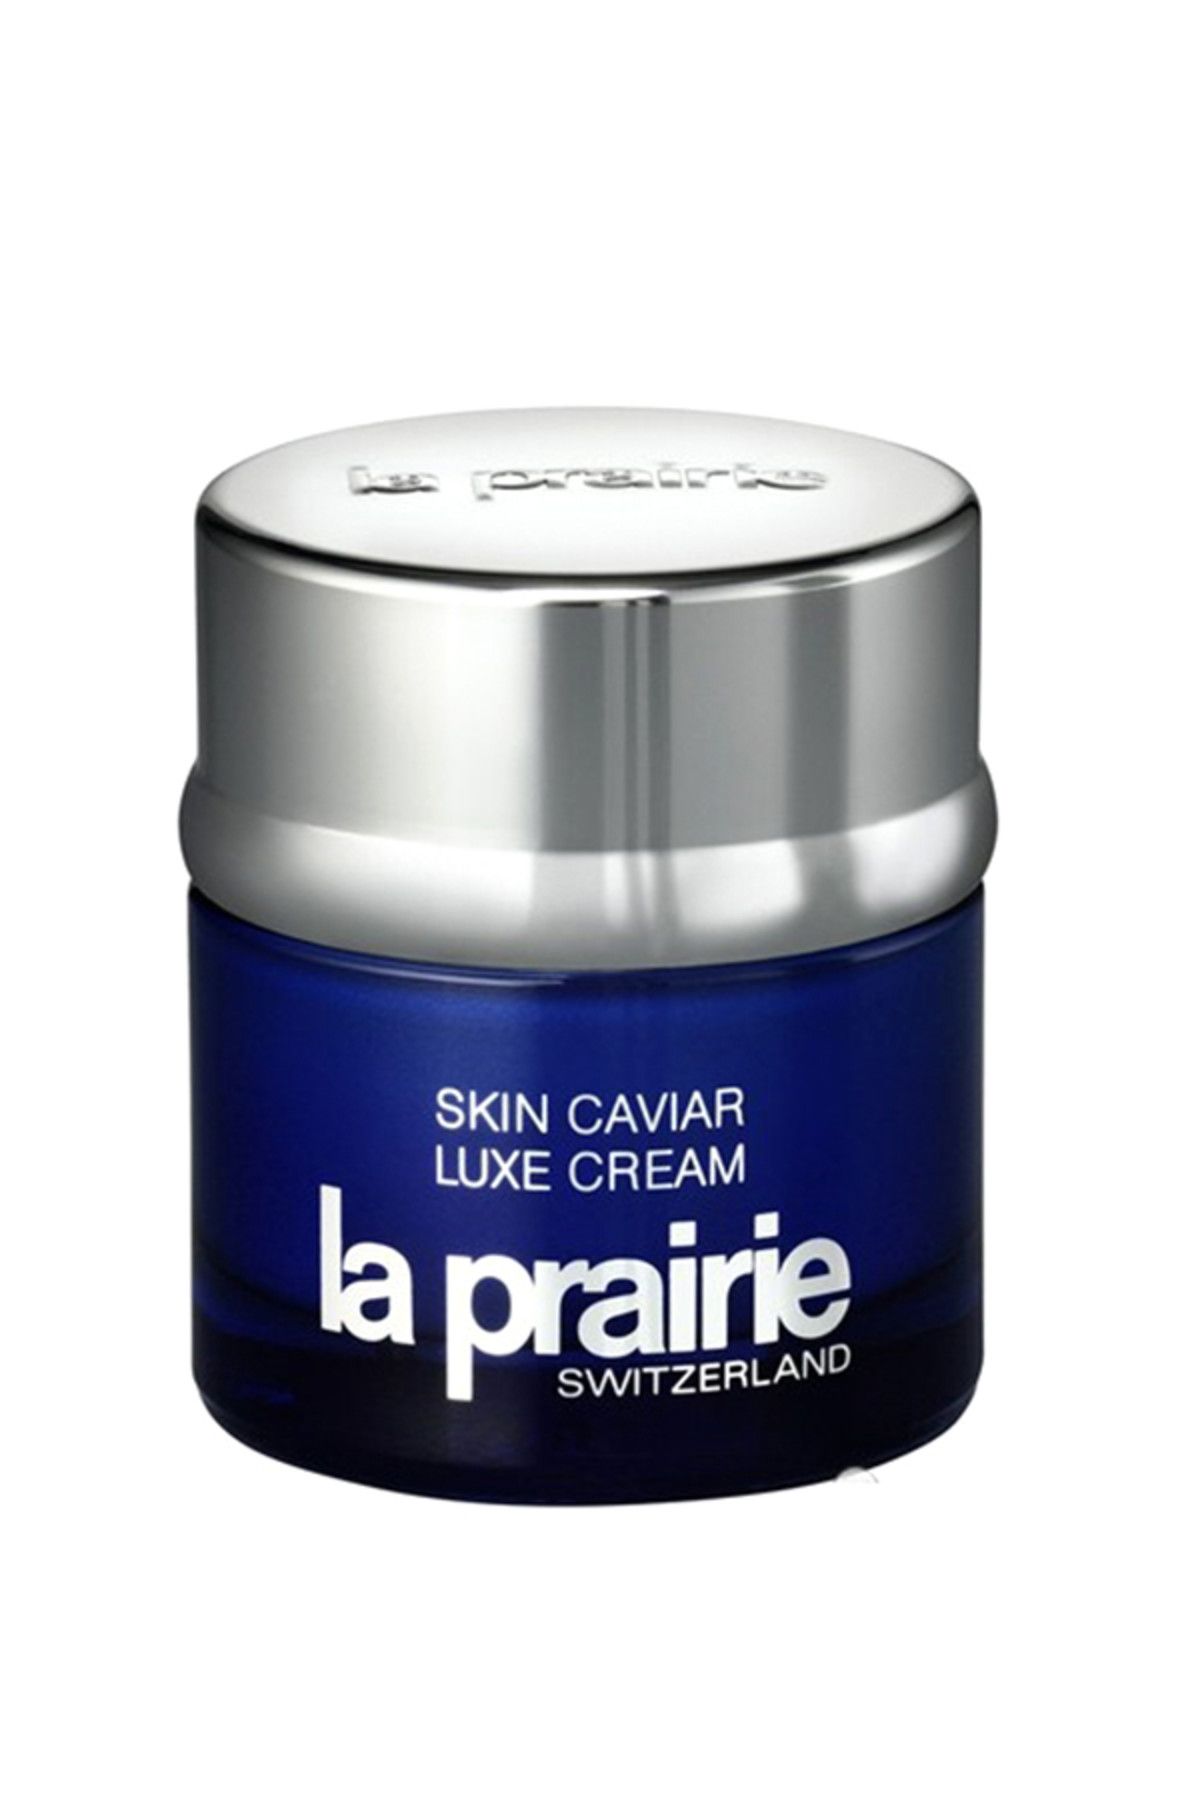 La Prairie Yaşlanma Karşıtı Özel Bakım Kremi - Skin Caviar Luxe Cream 50 ml 7611773230919